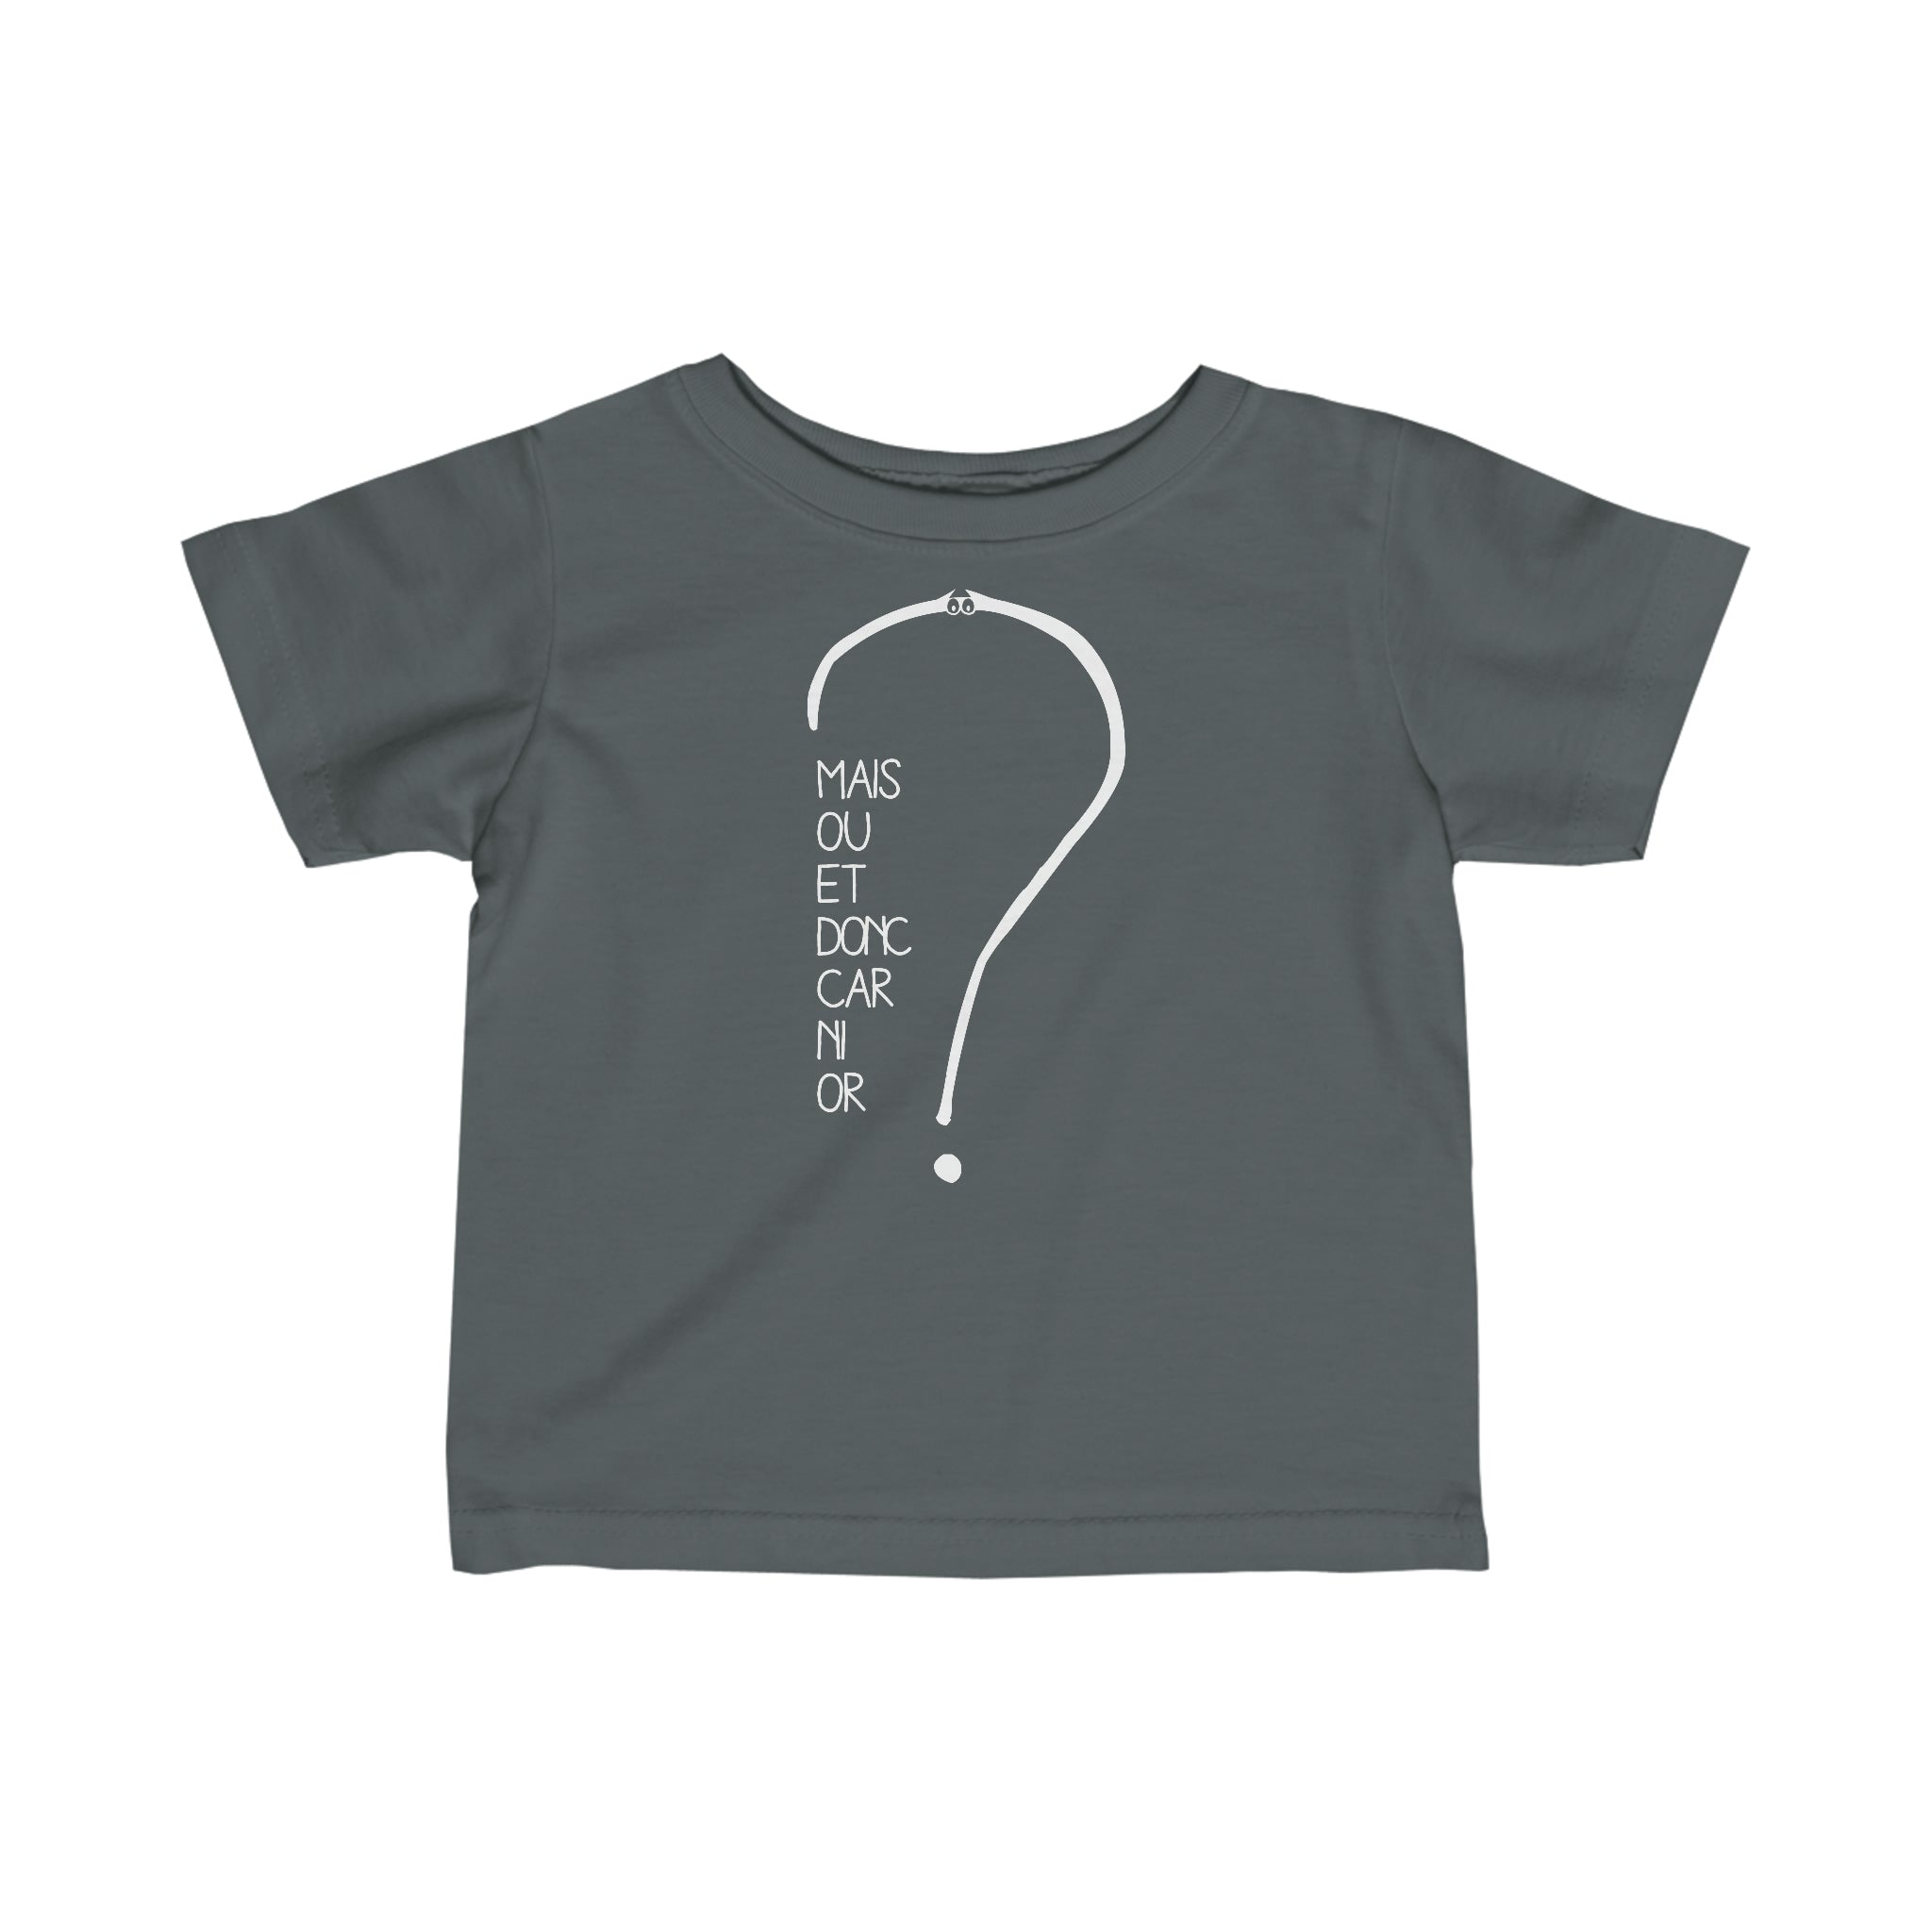 T-shirt pour bébé - Mais où et donc car ni or